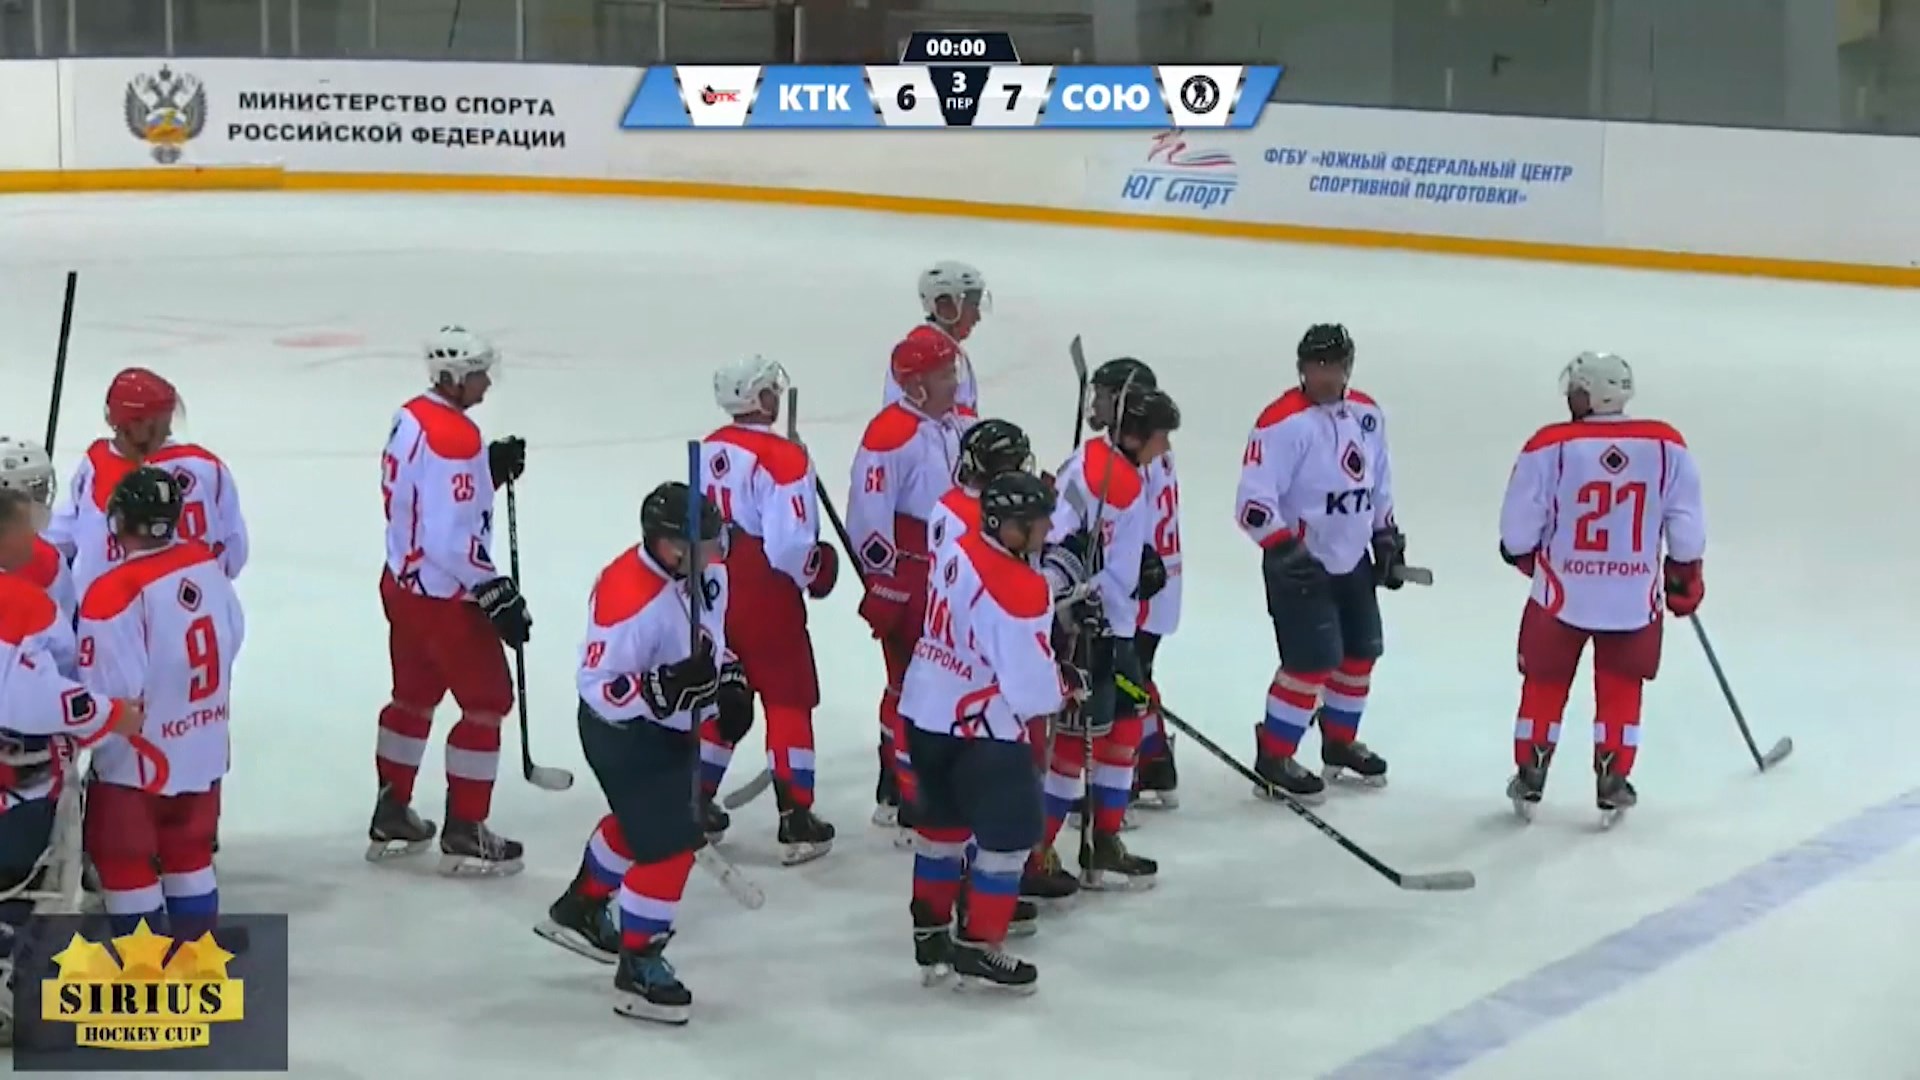 Немолодые костромские хоккеисты стали призерами престижного всероссийского турнира